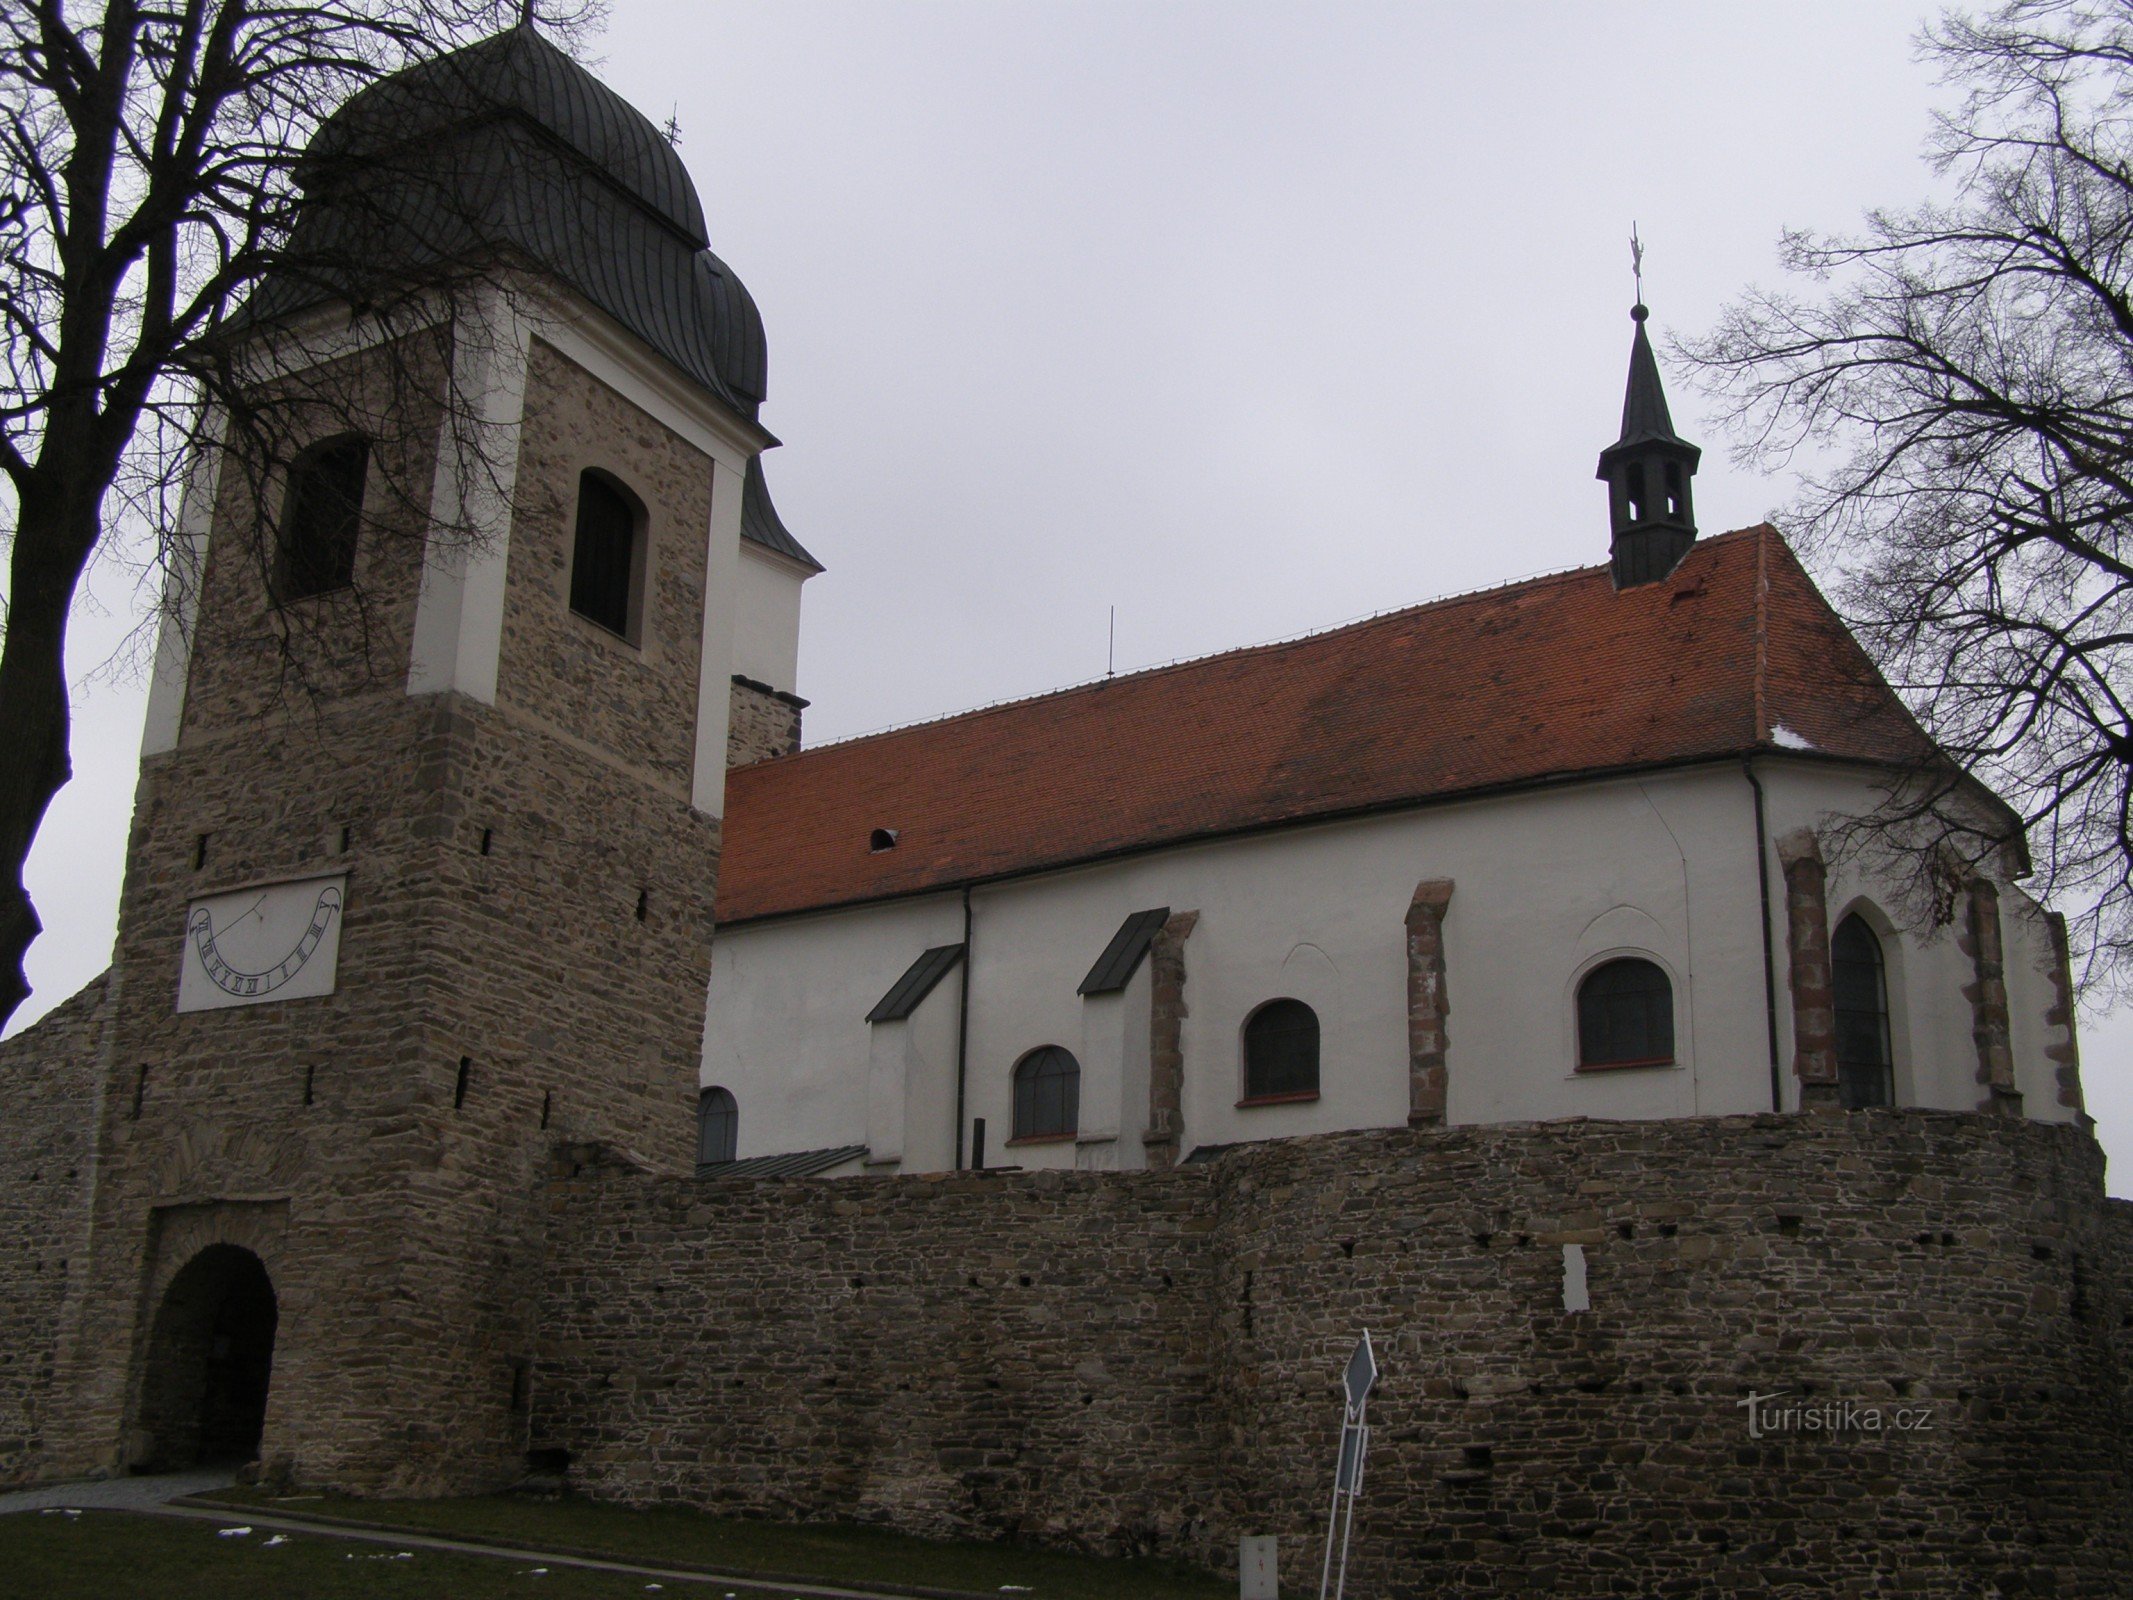 Velká Bíteš – miasto z twierdzą kościelną